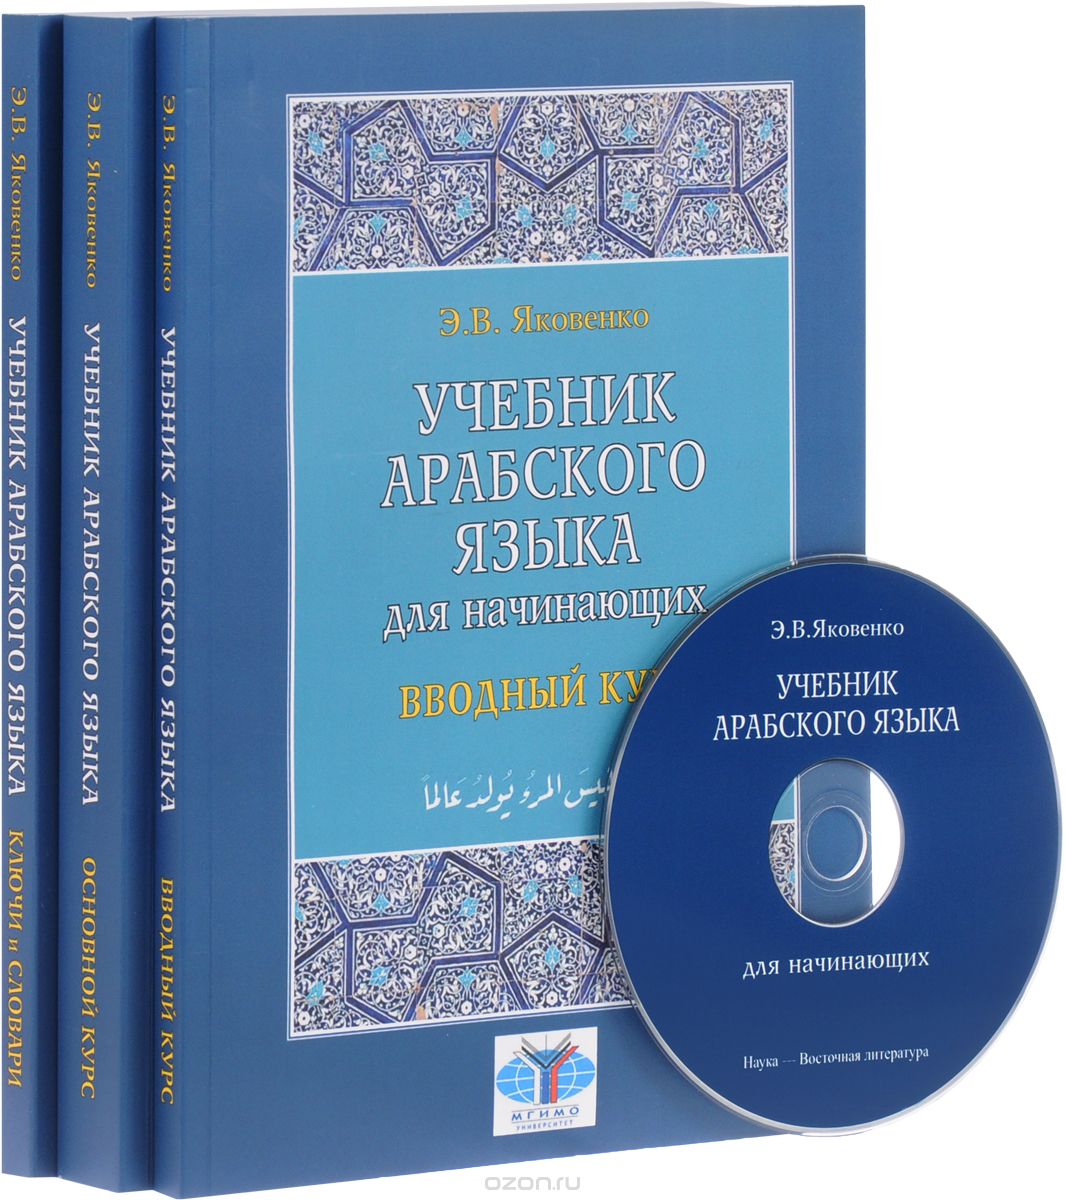 Арабский язык для начинающих. Учебник. В 3 книгах (комплект из 3 книг + CD), Э. В. Яковенко